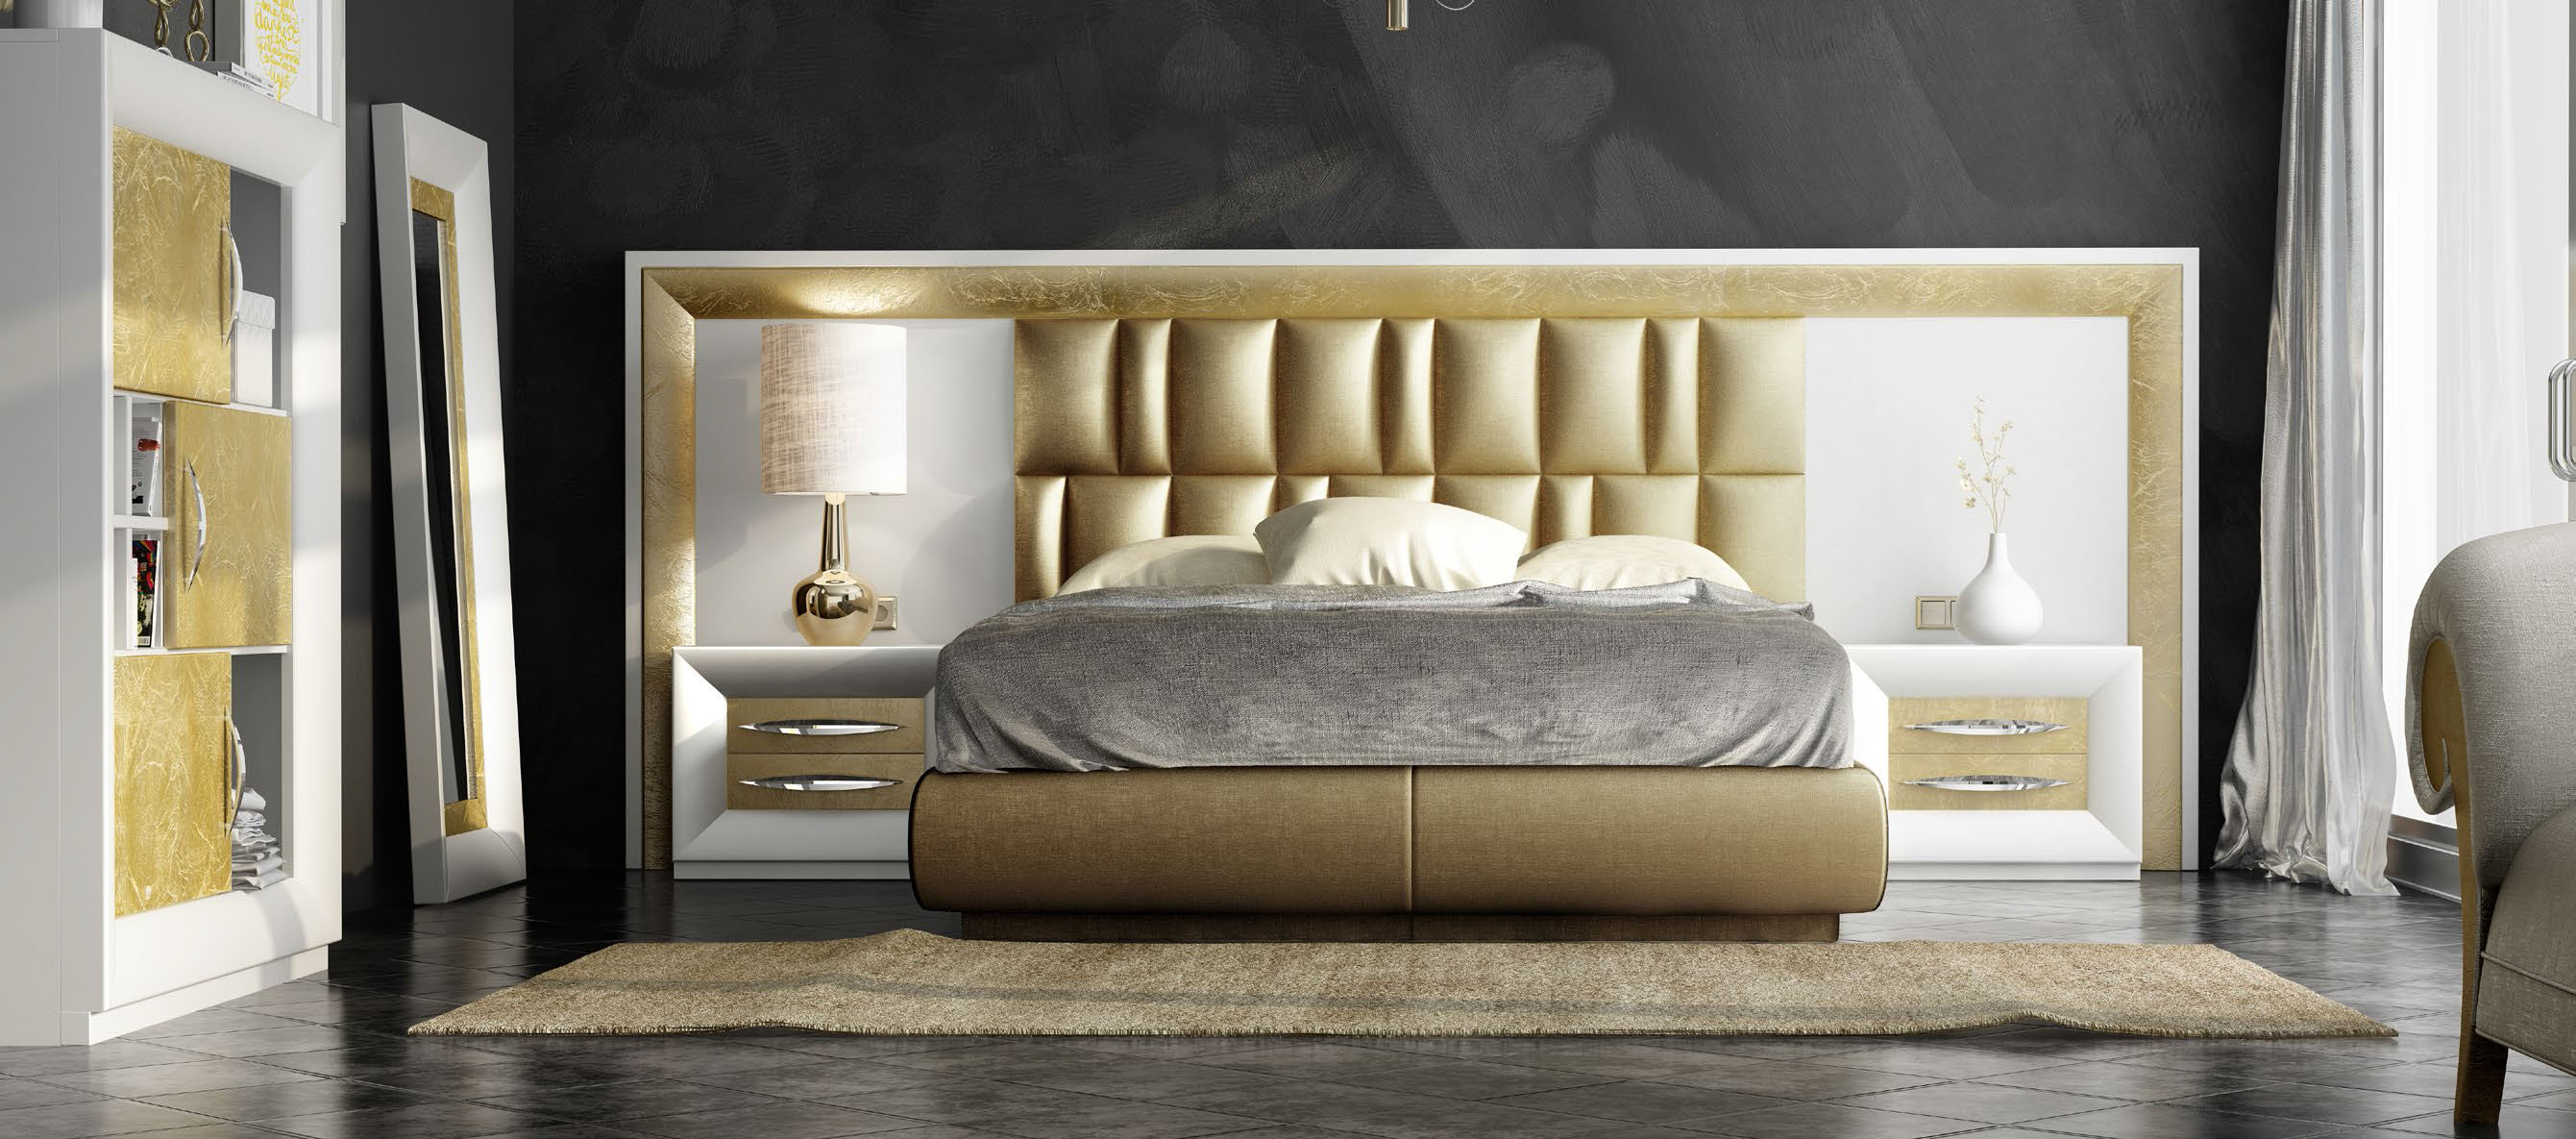 Bedroom Furniture Nightstands DOR 136